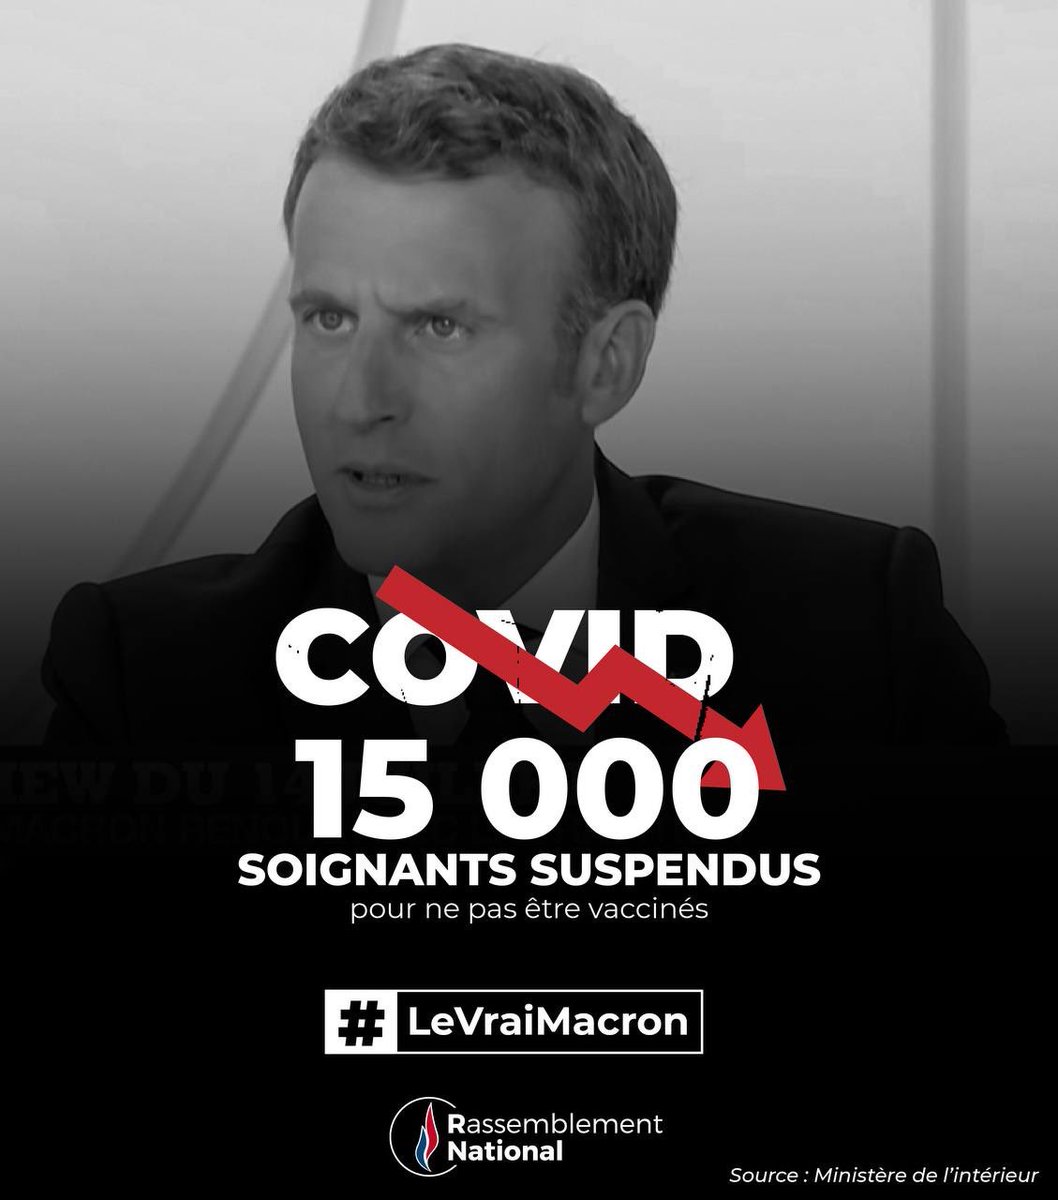 #macron20h 
#LeVraiMacron